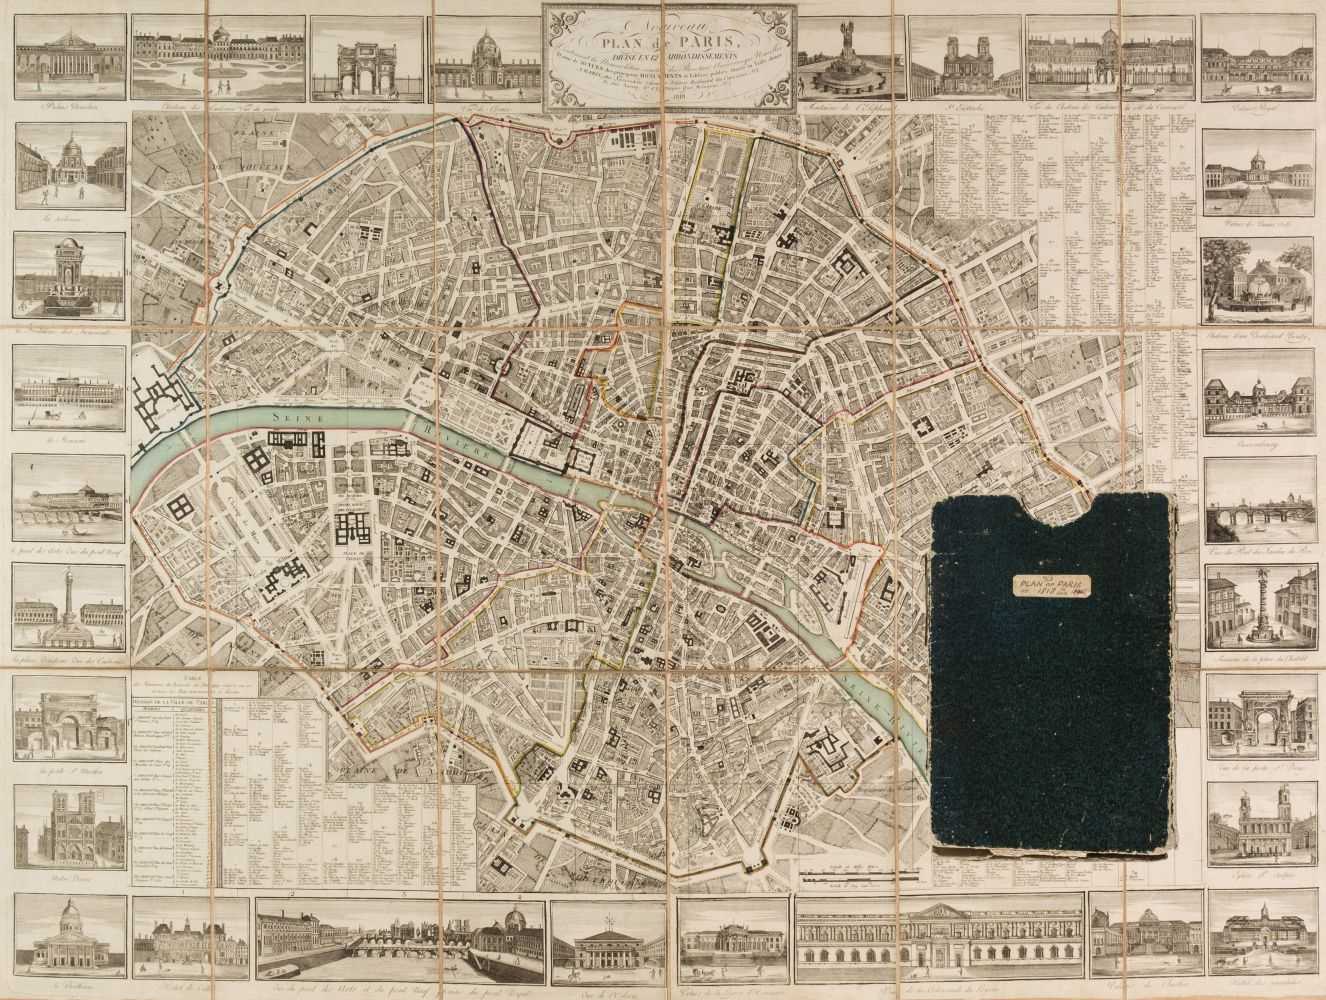 Lot 105 - Paris. Lecrivain (publisher), Nouveau plan de Paris divisé en 12 arrondissements. 1818